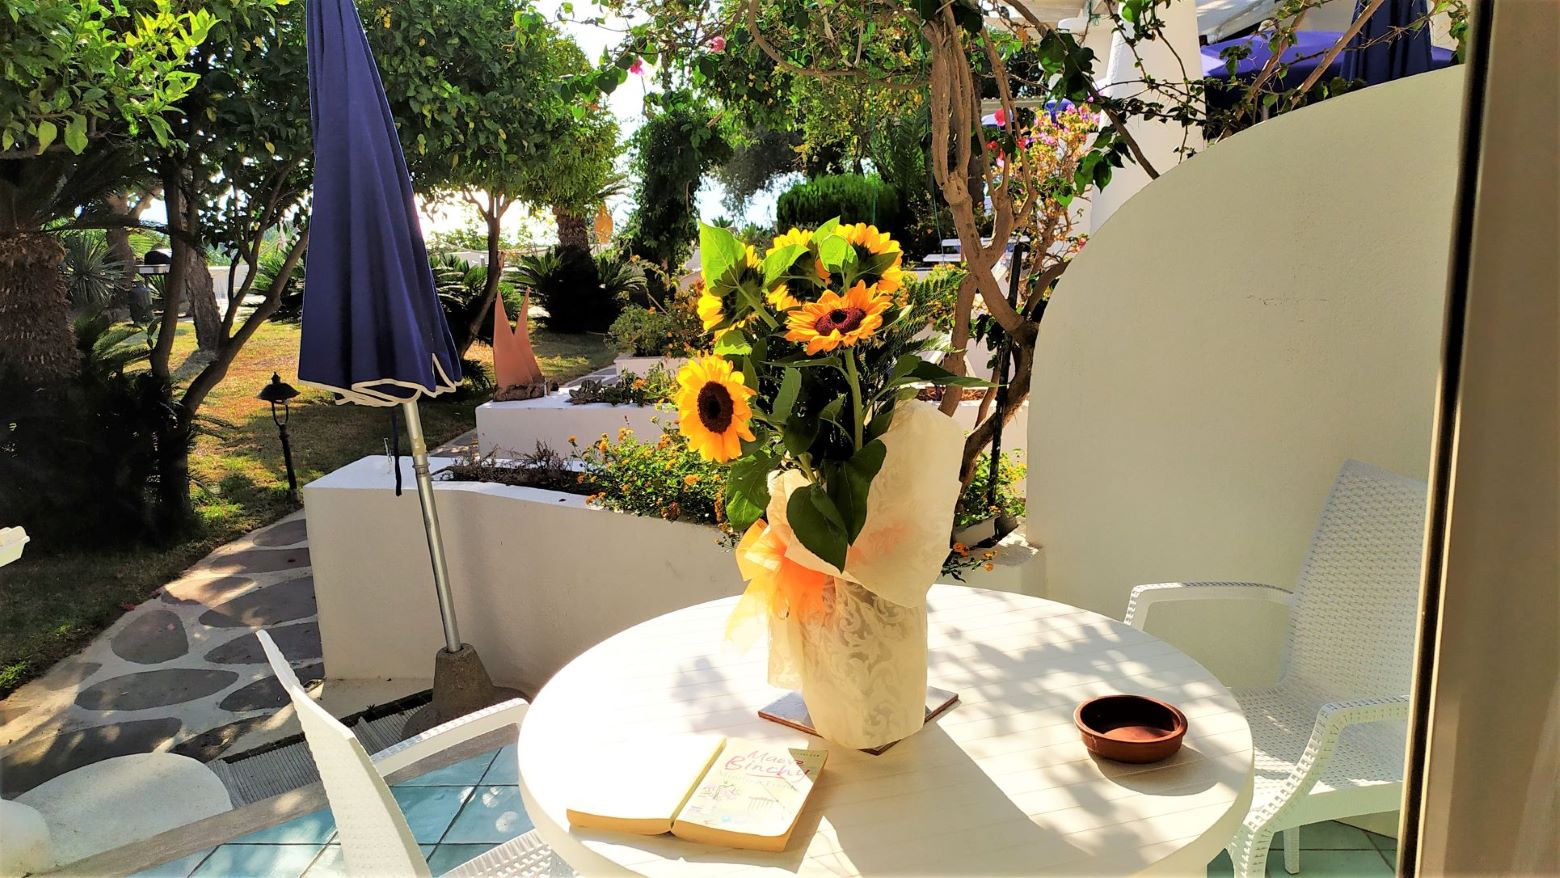 Ischia, Villa, mediterranean, mindfulness, garden, spa